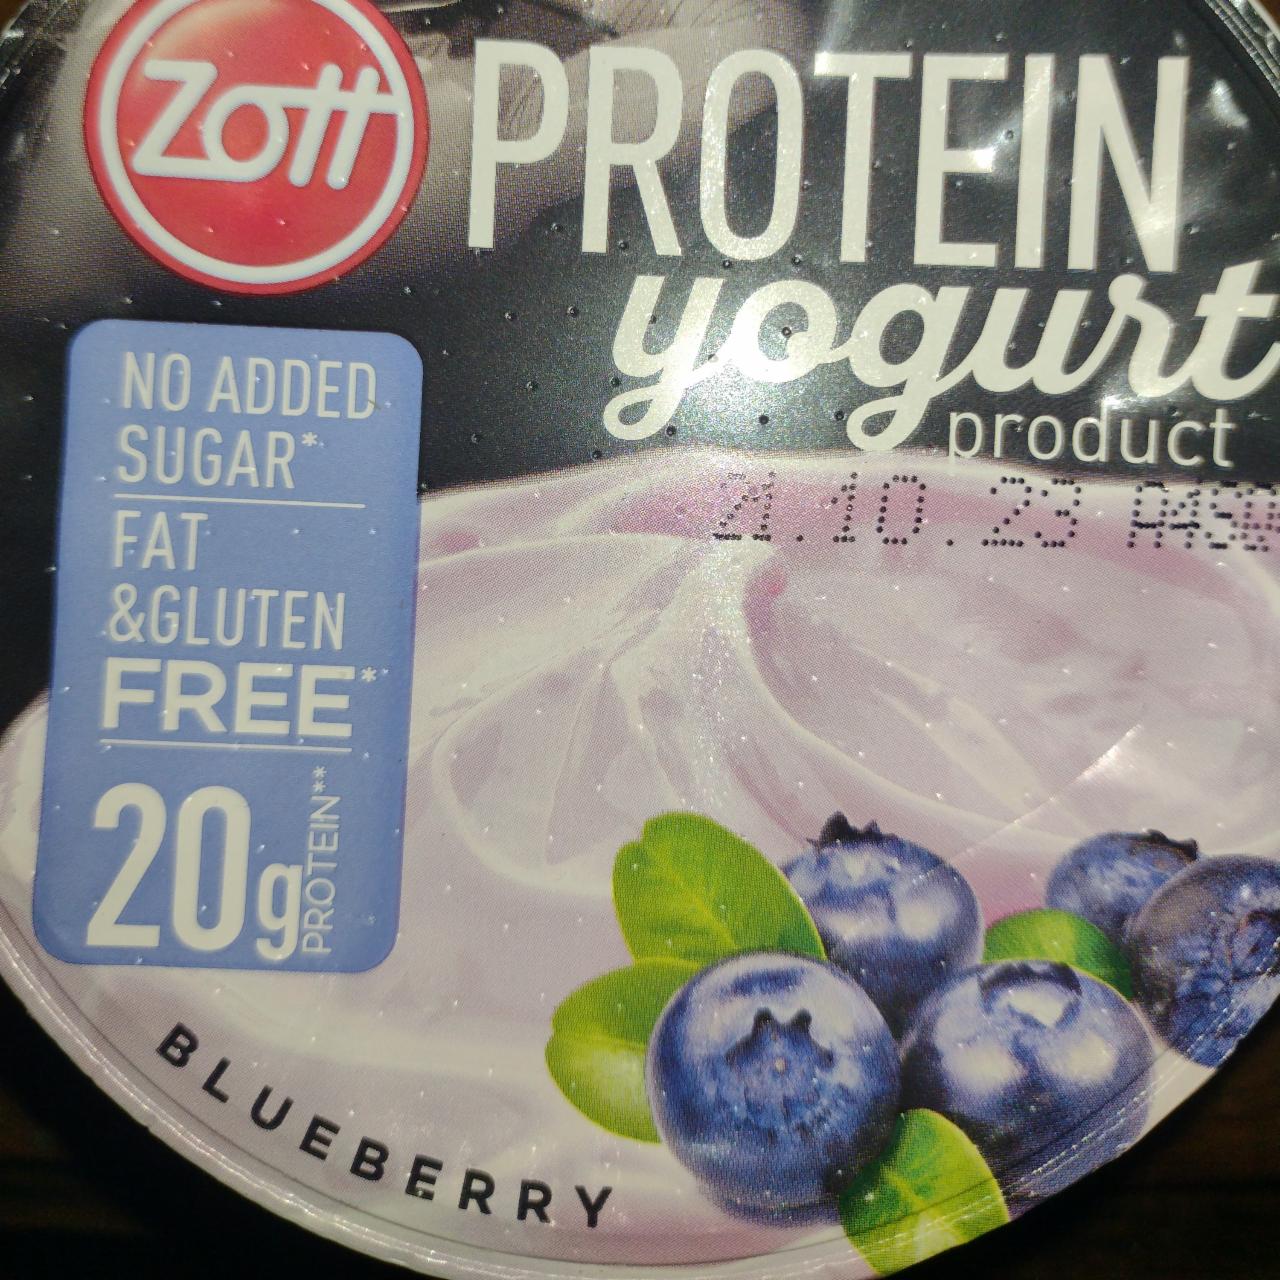 Zdjęcia - Protein yogurt product Blueberry Zott